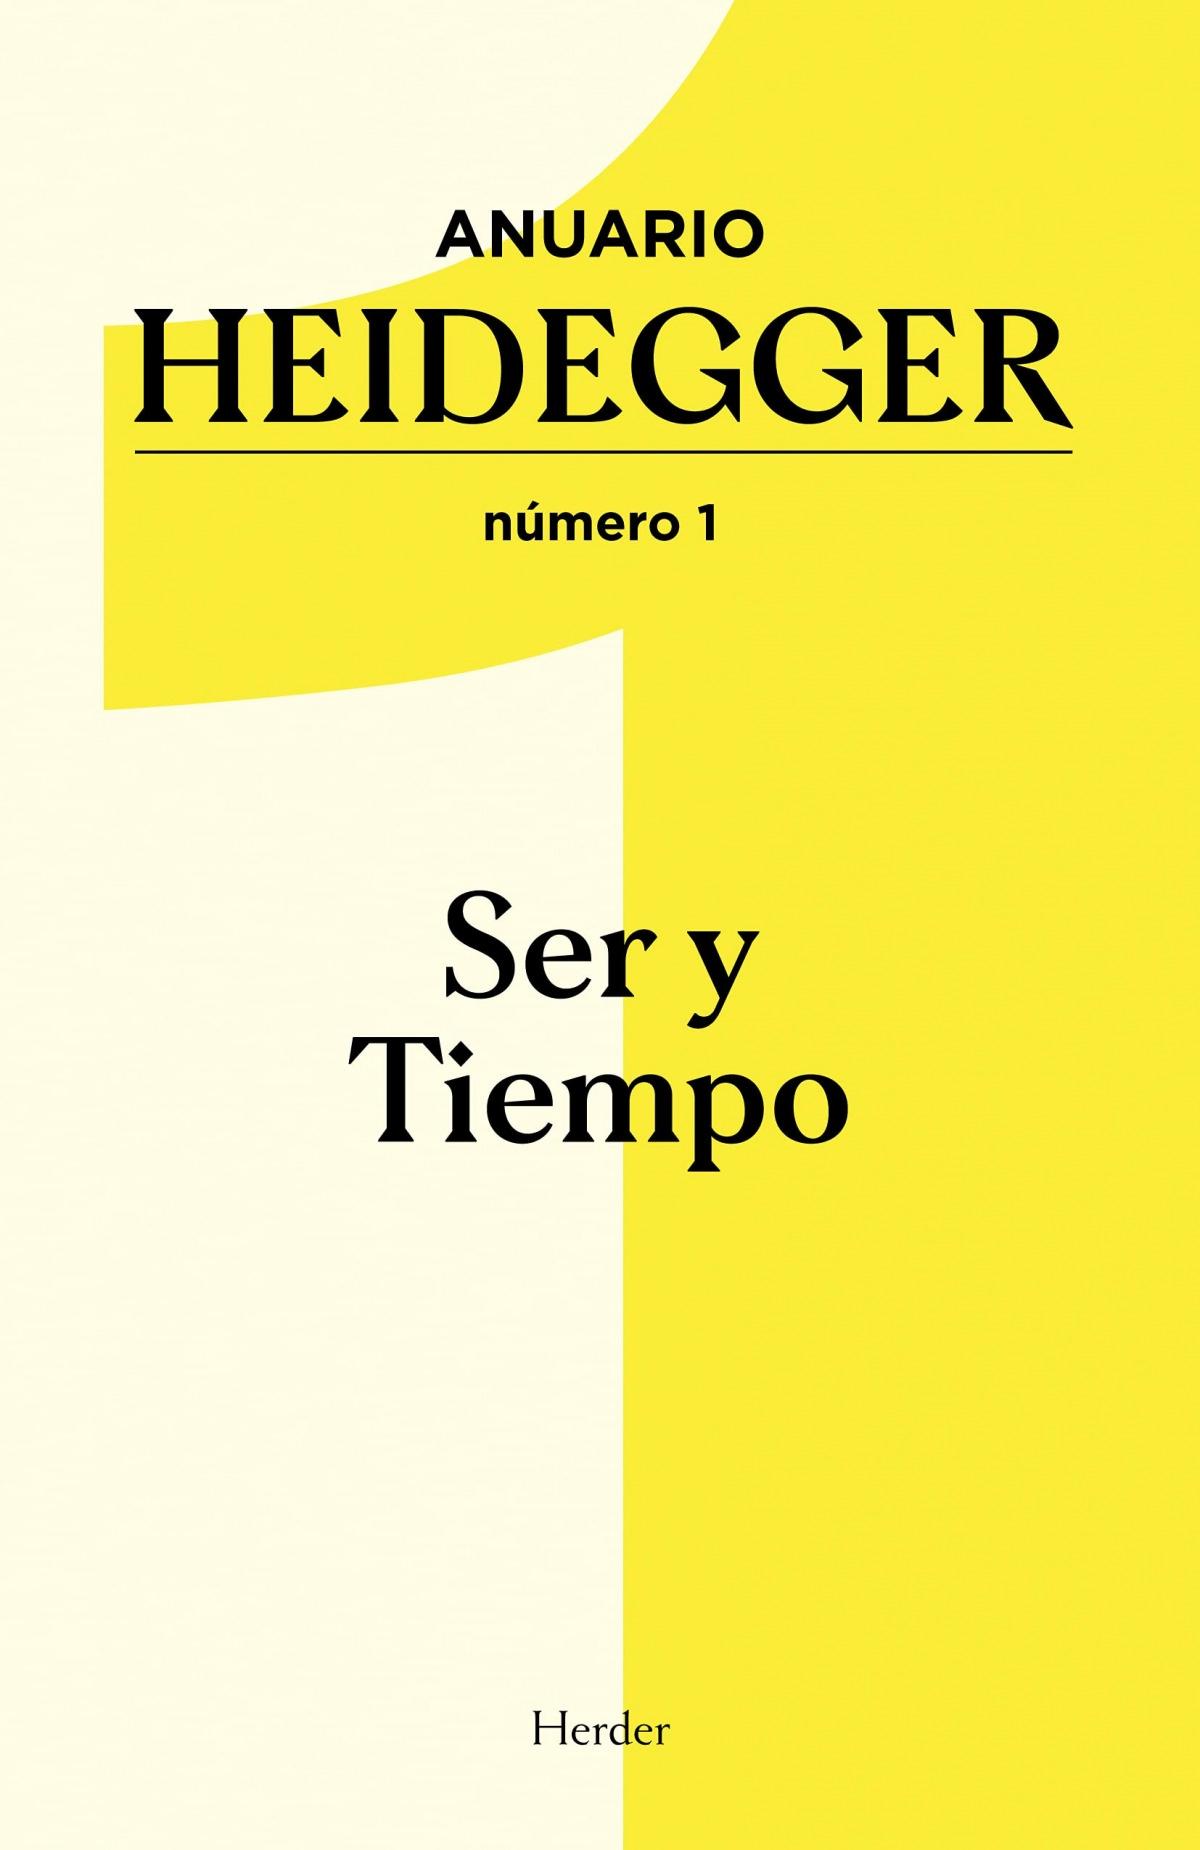 Anuario Heidegger nº 1 "Ser y tiempo"